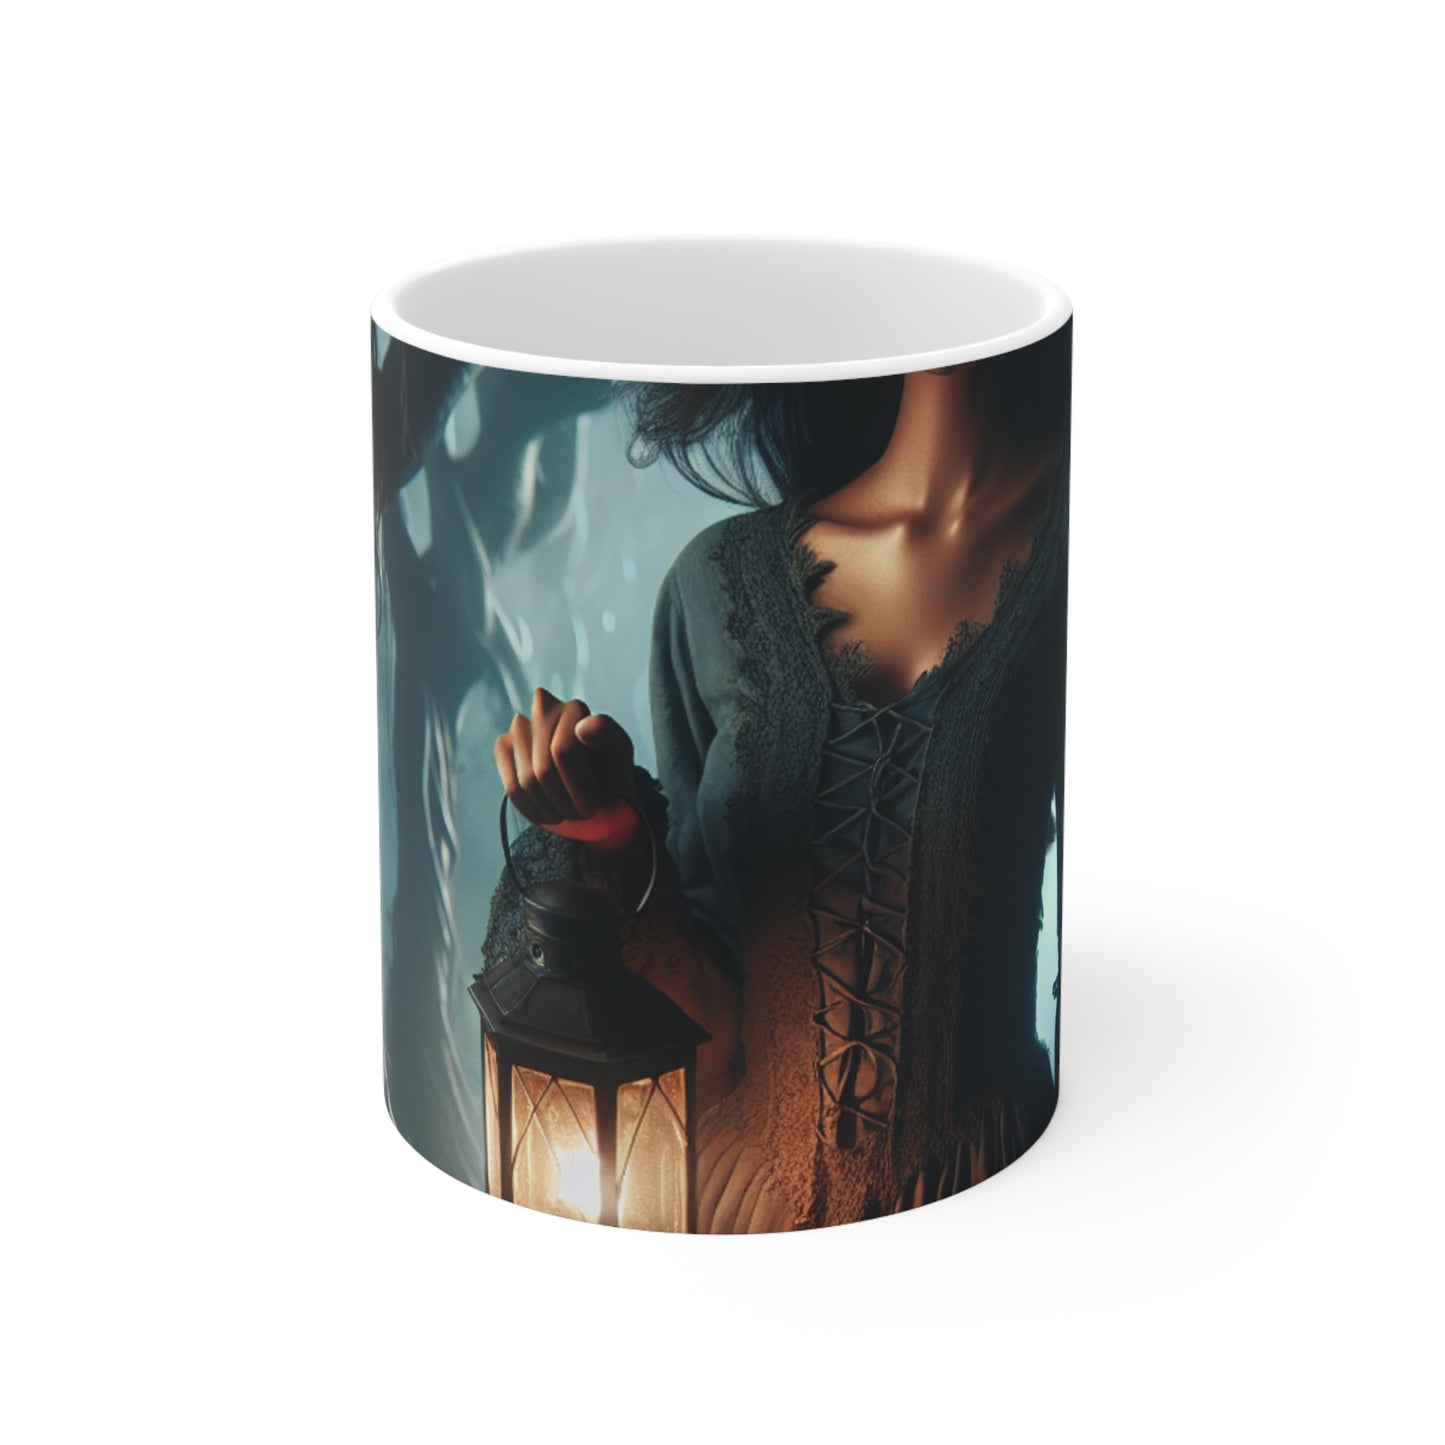 "Prêt pour la bataille dans les bois tordus" - La tasse en céramique Alien 11oz style art gothique